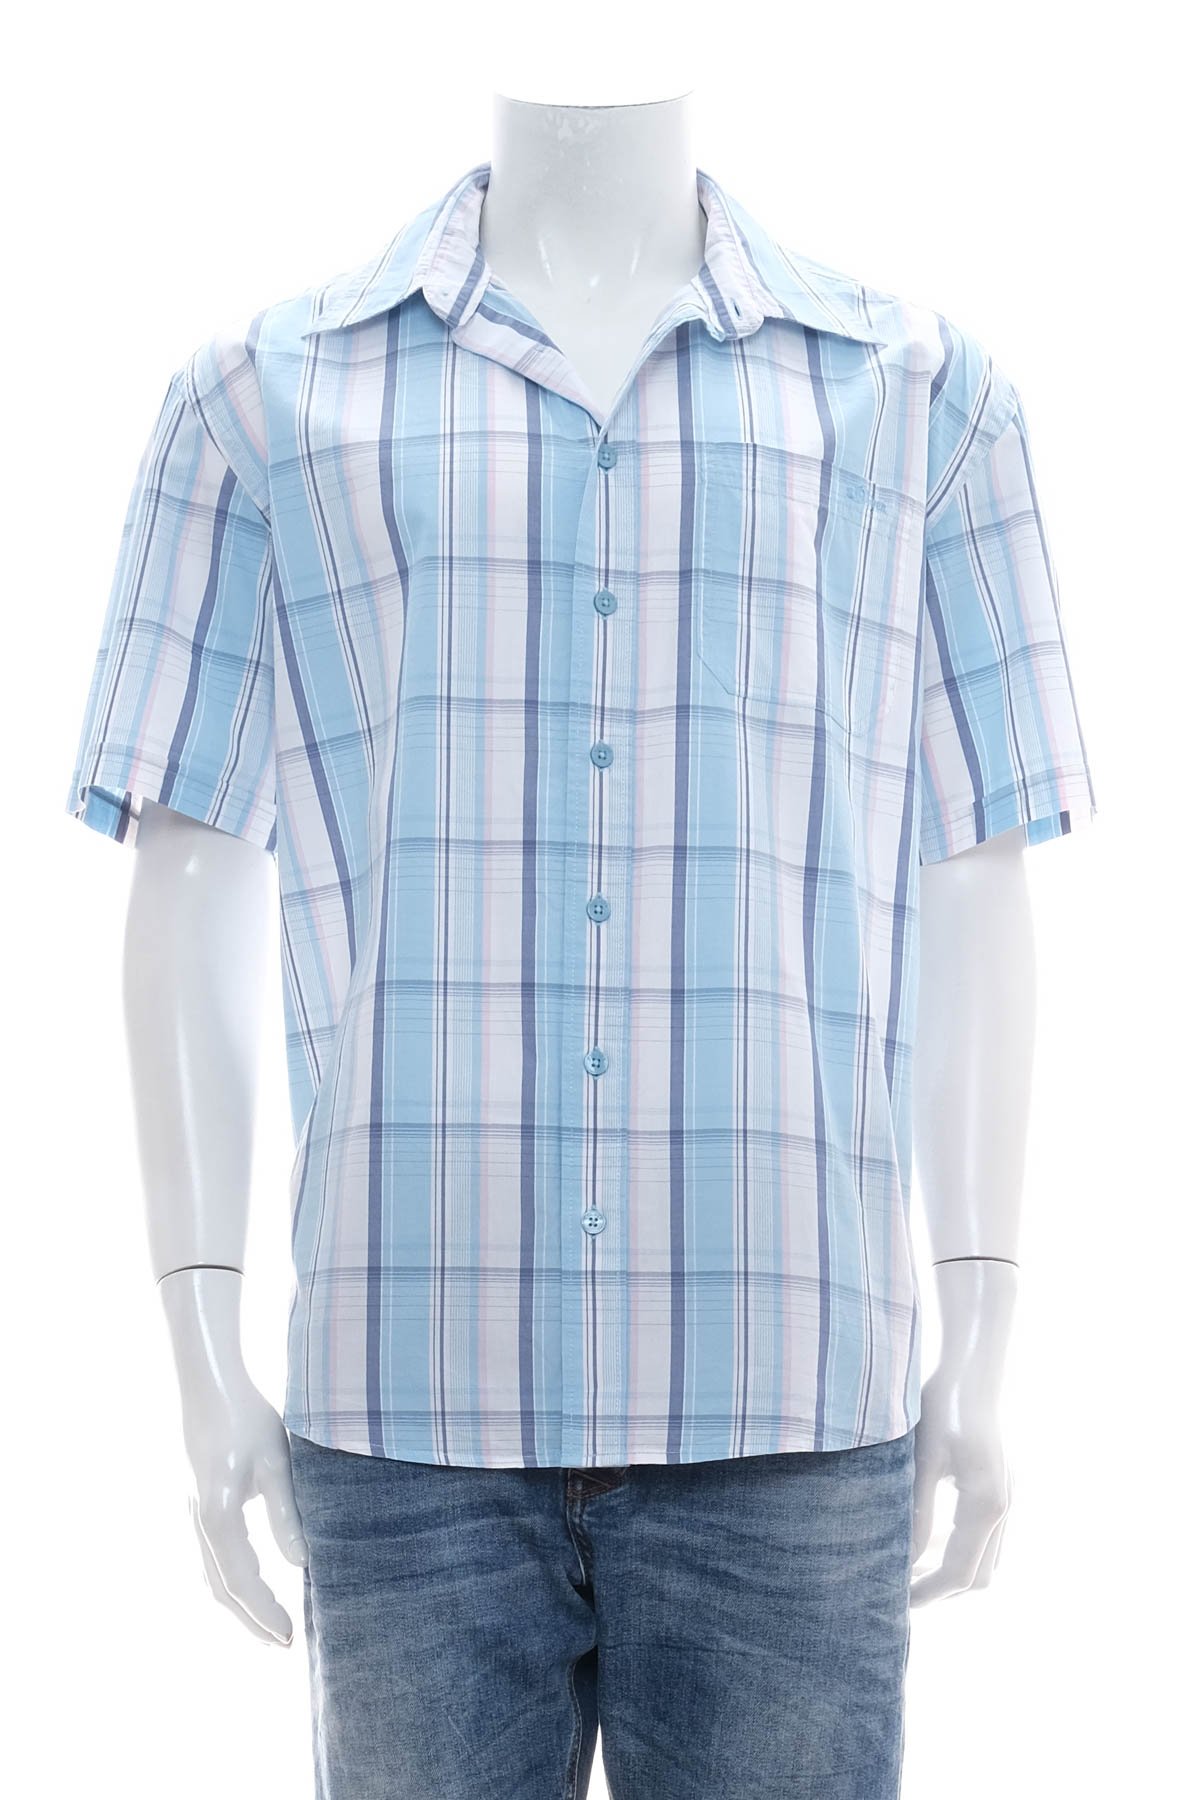 Ανδρικό πουκάμισο - S.Oliver - 0